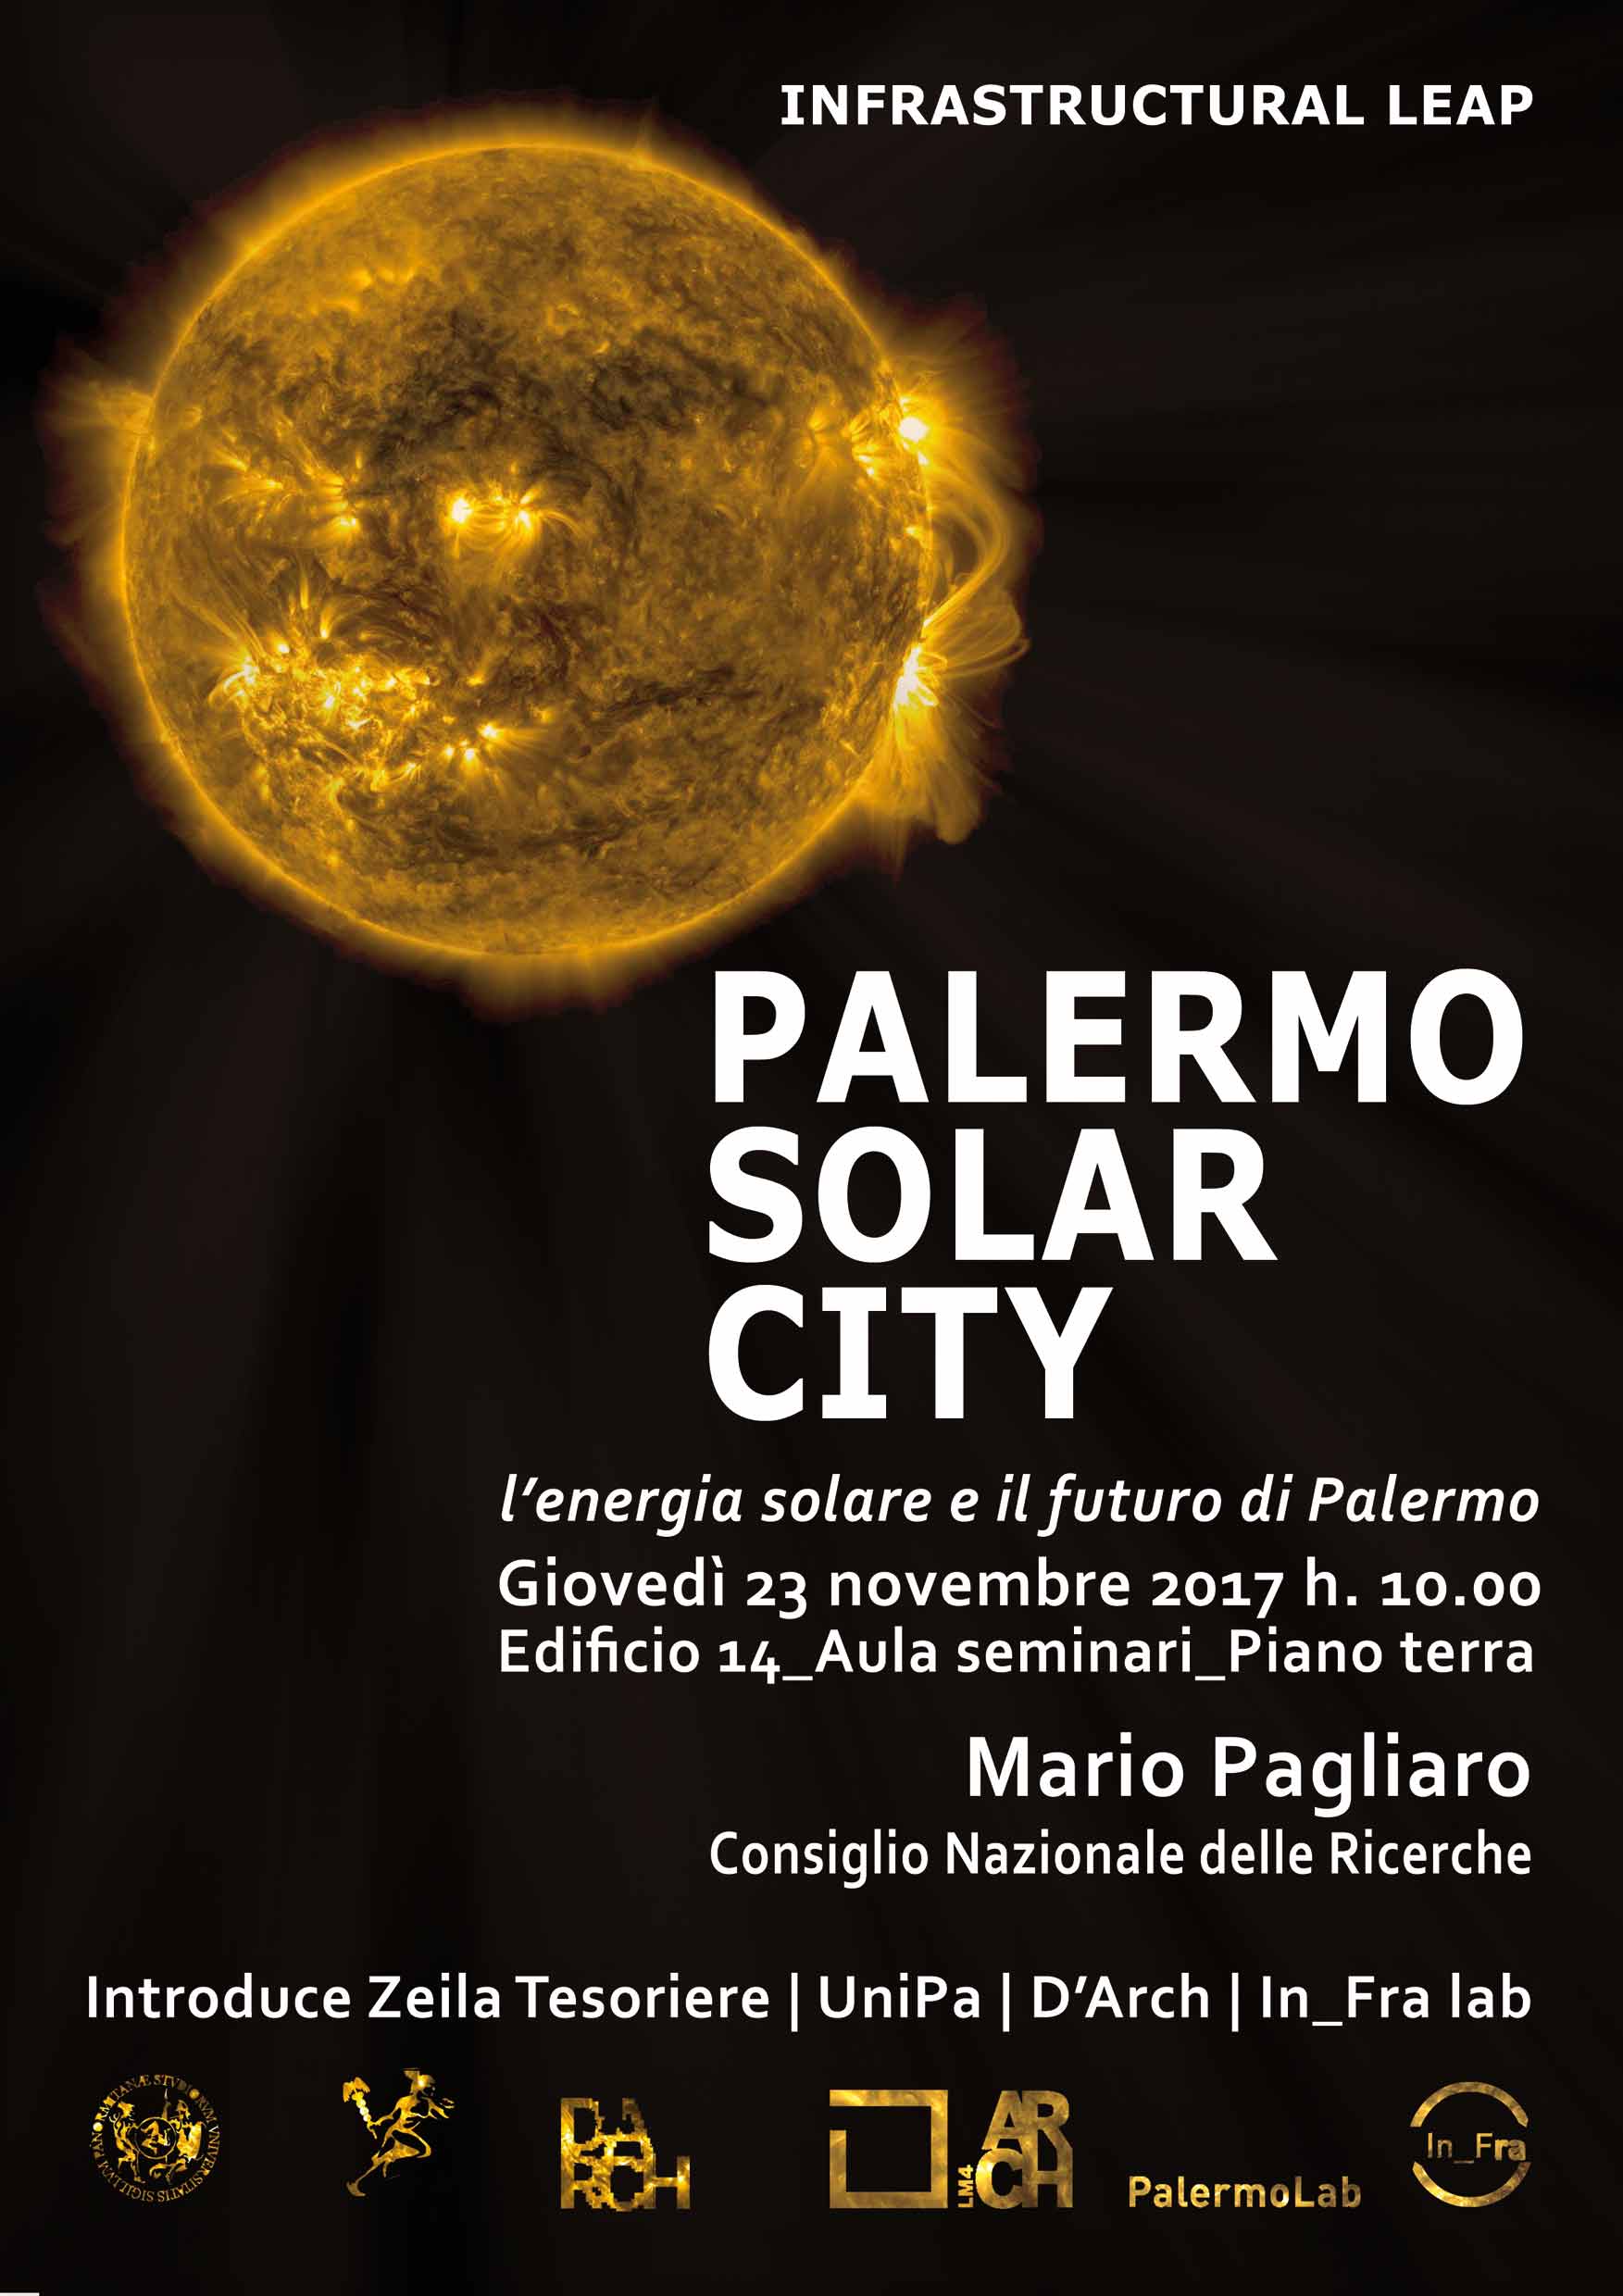 Palermo Solar City - Mario Pagliaro's lecture at Palermo's University on Nov 23rd, 2017